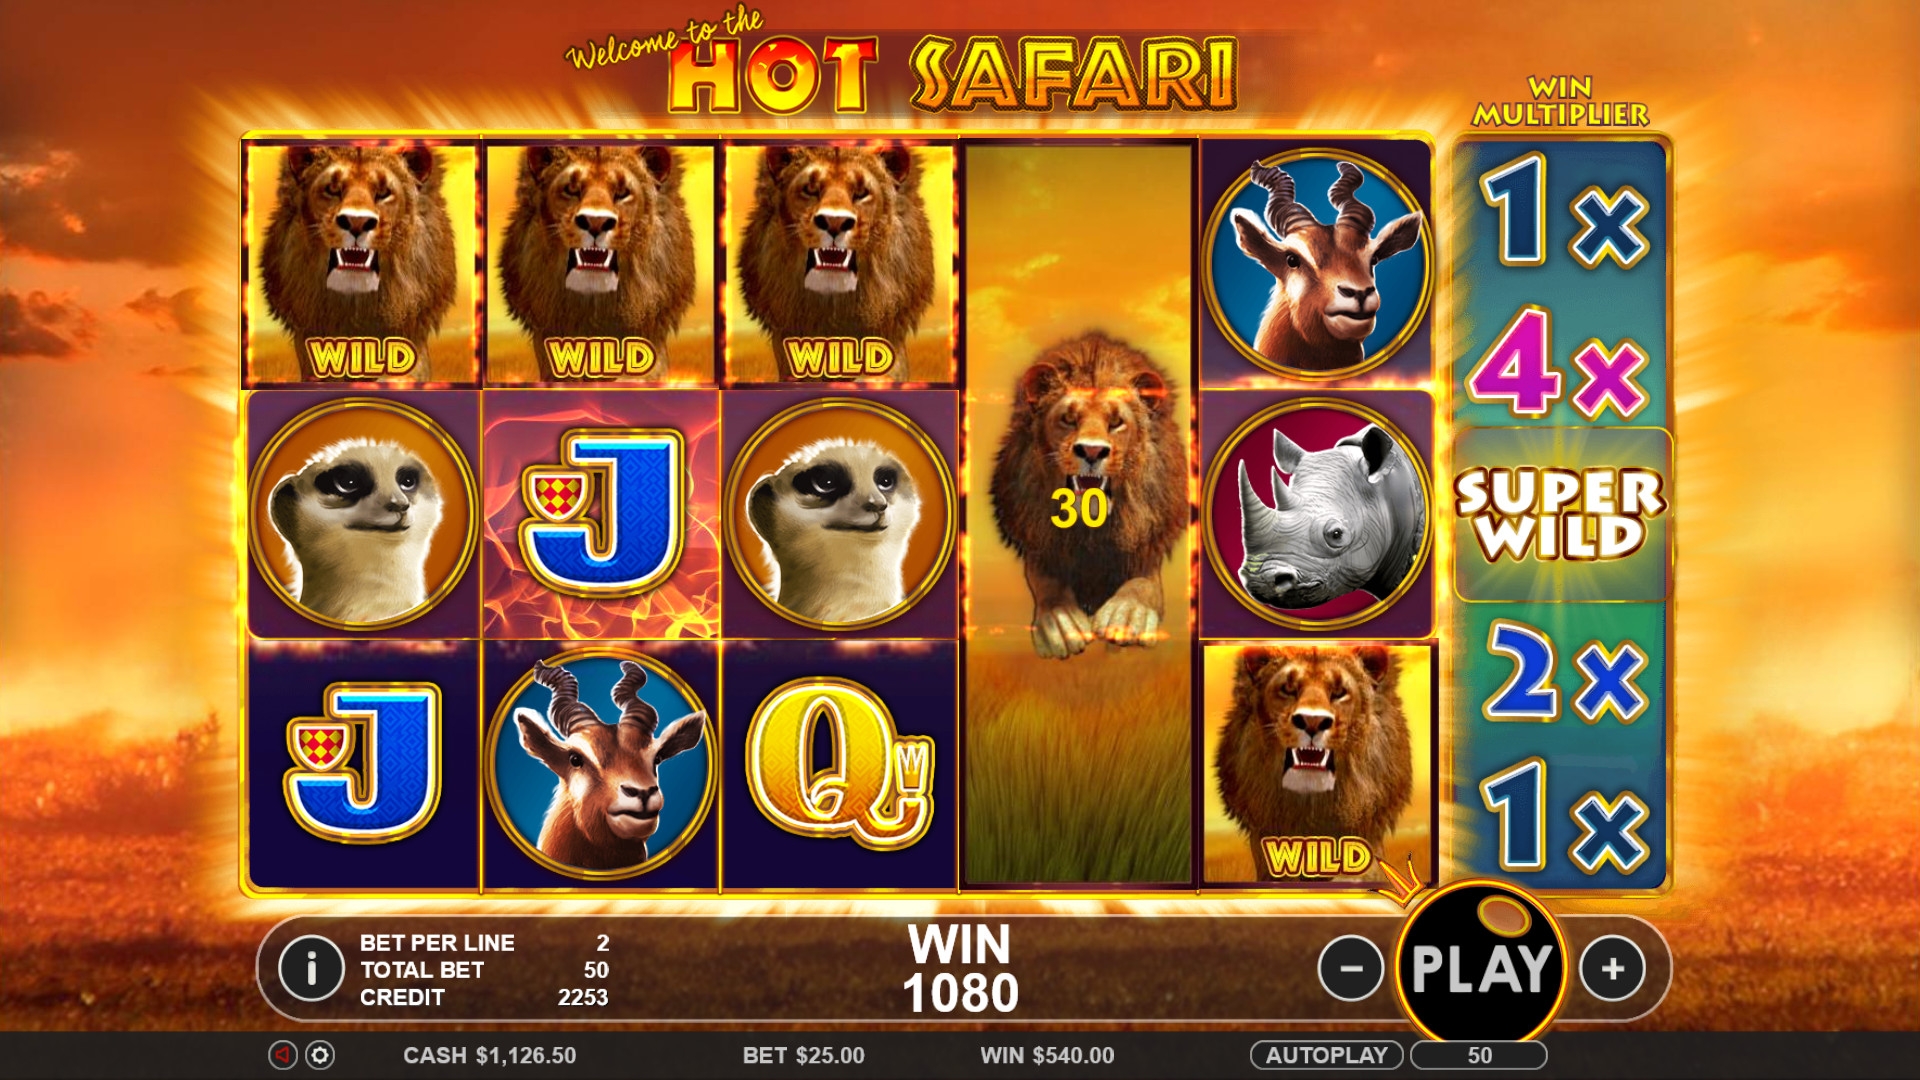 Hot Safari (Hot Safari) from category Slots